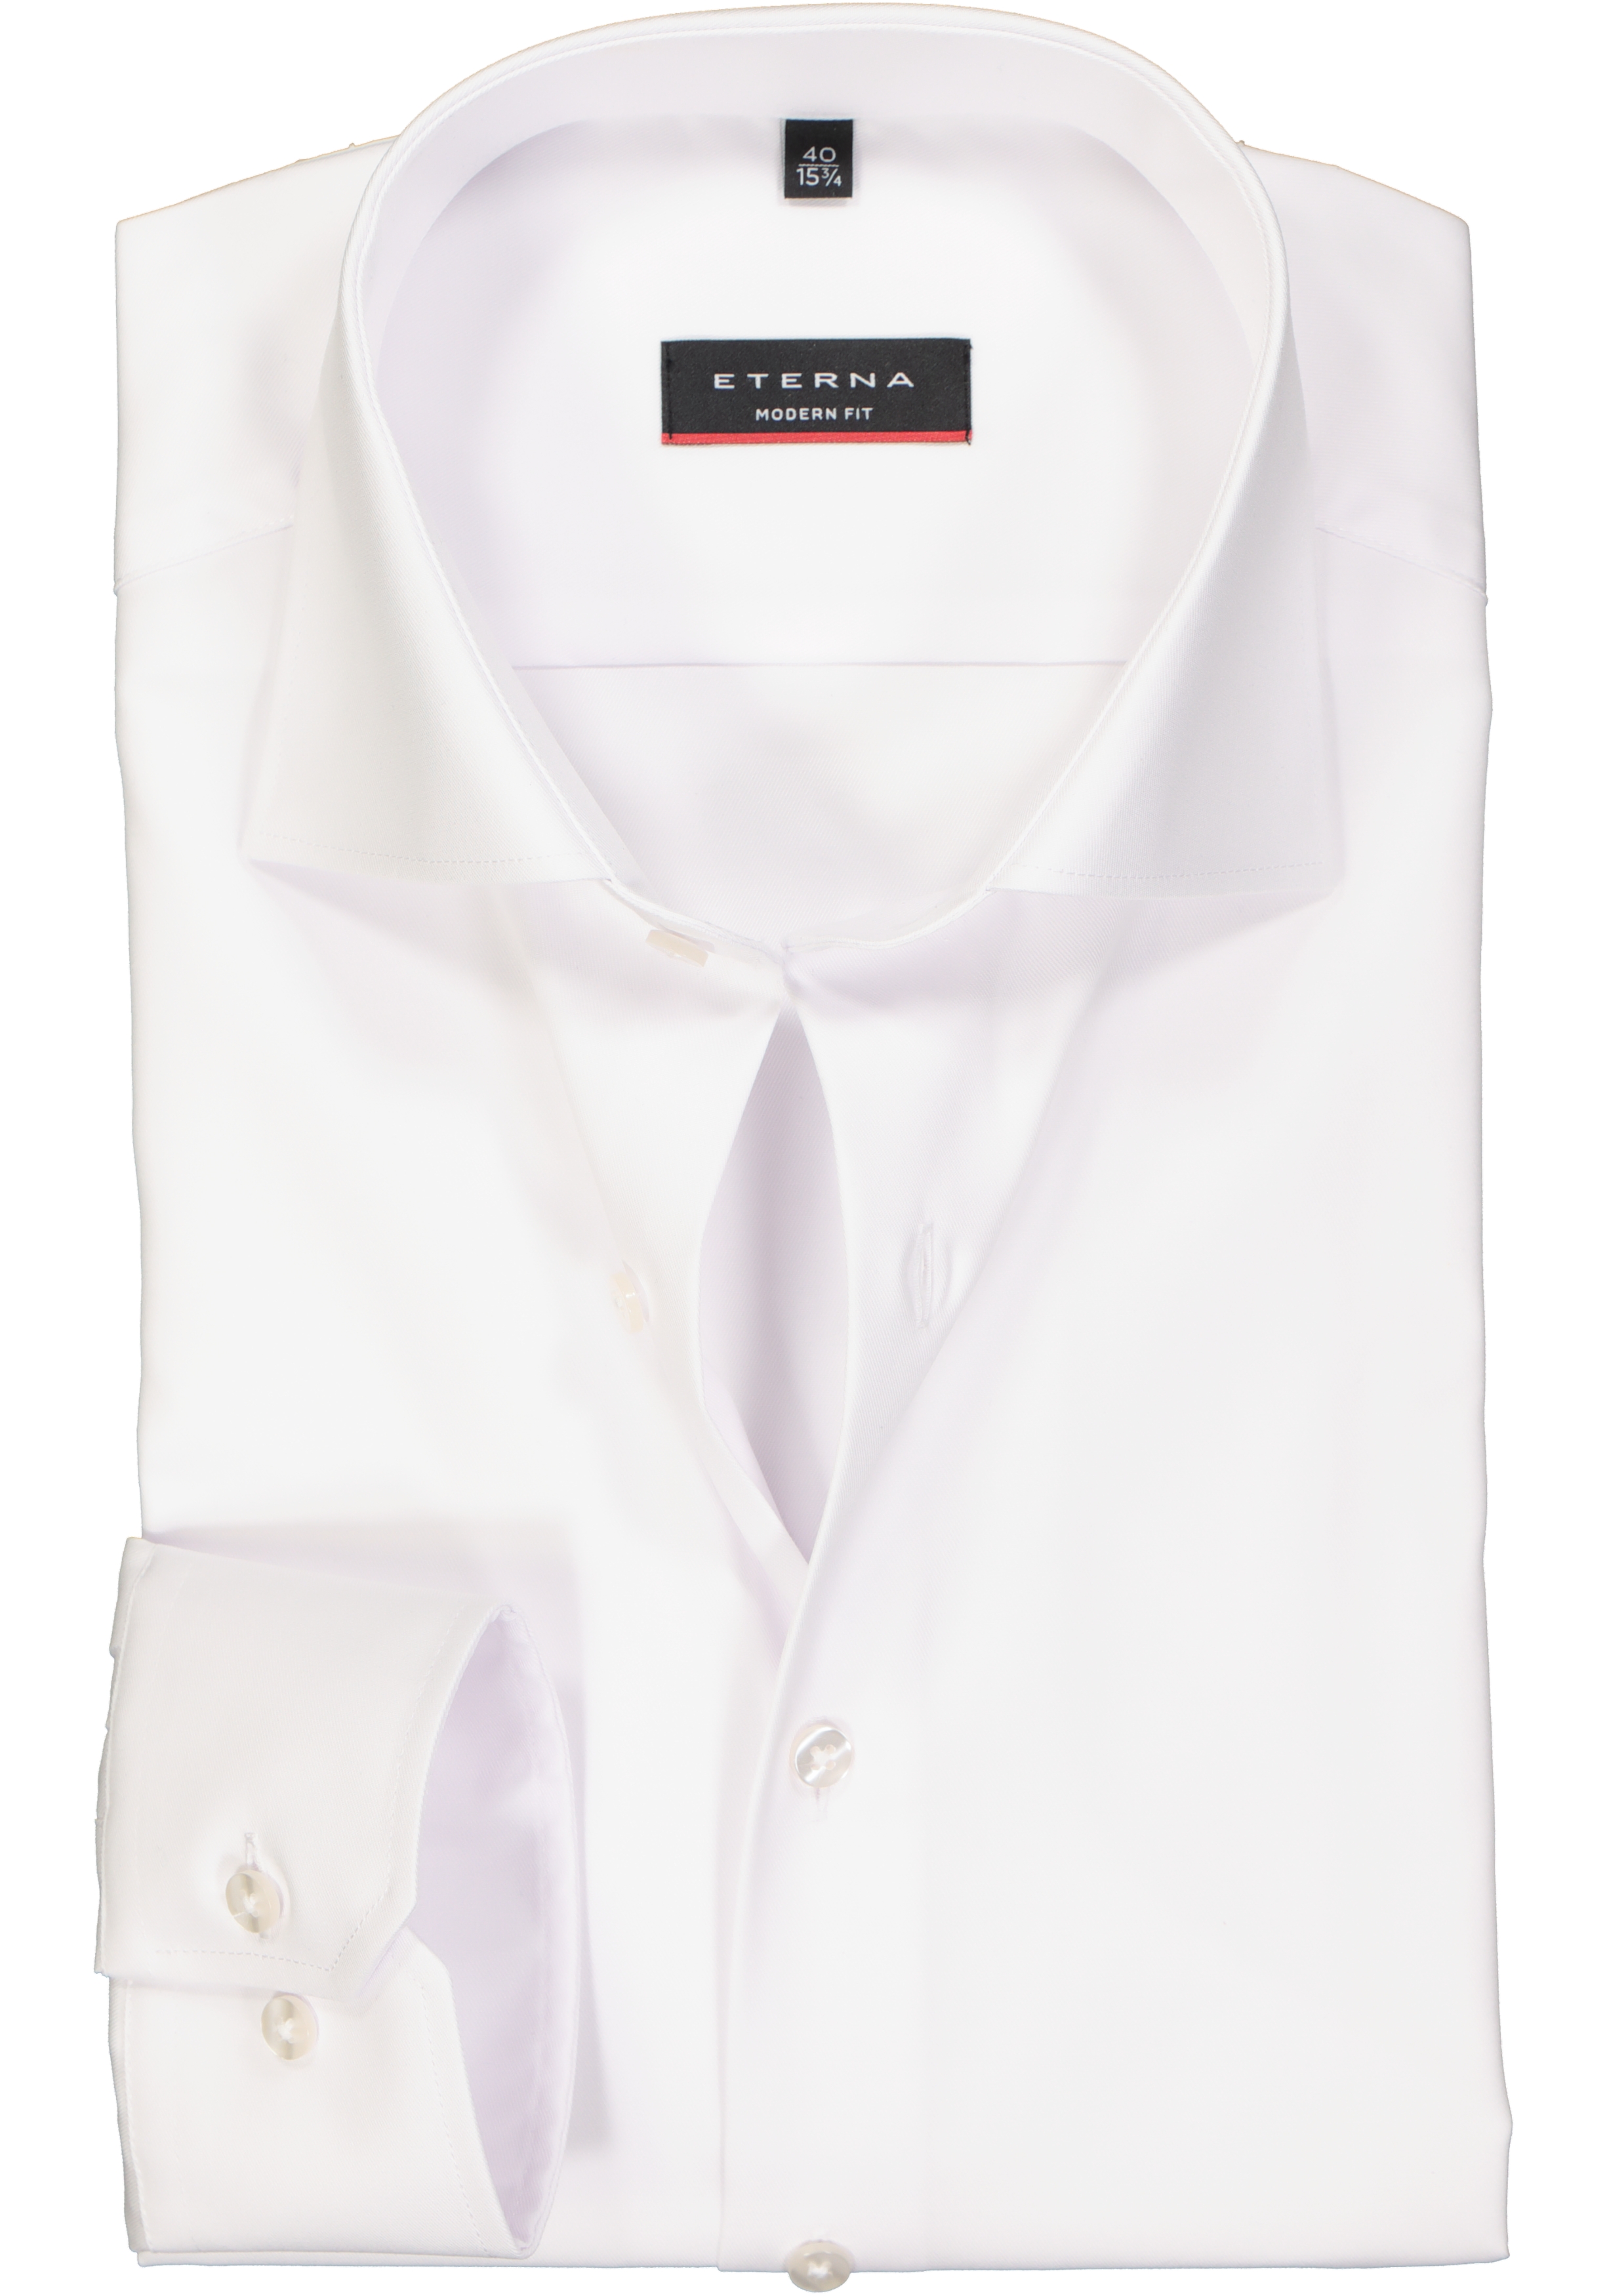 beeld Besnoeiing Middelen ETERNA modern fit overhemd, niet doorschijnend twill heren overhemd, wit -  Zomer SALE tot 70% korting